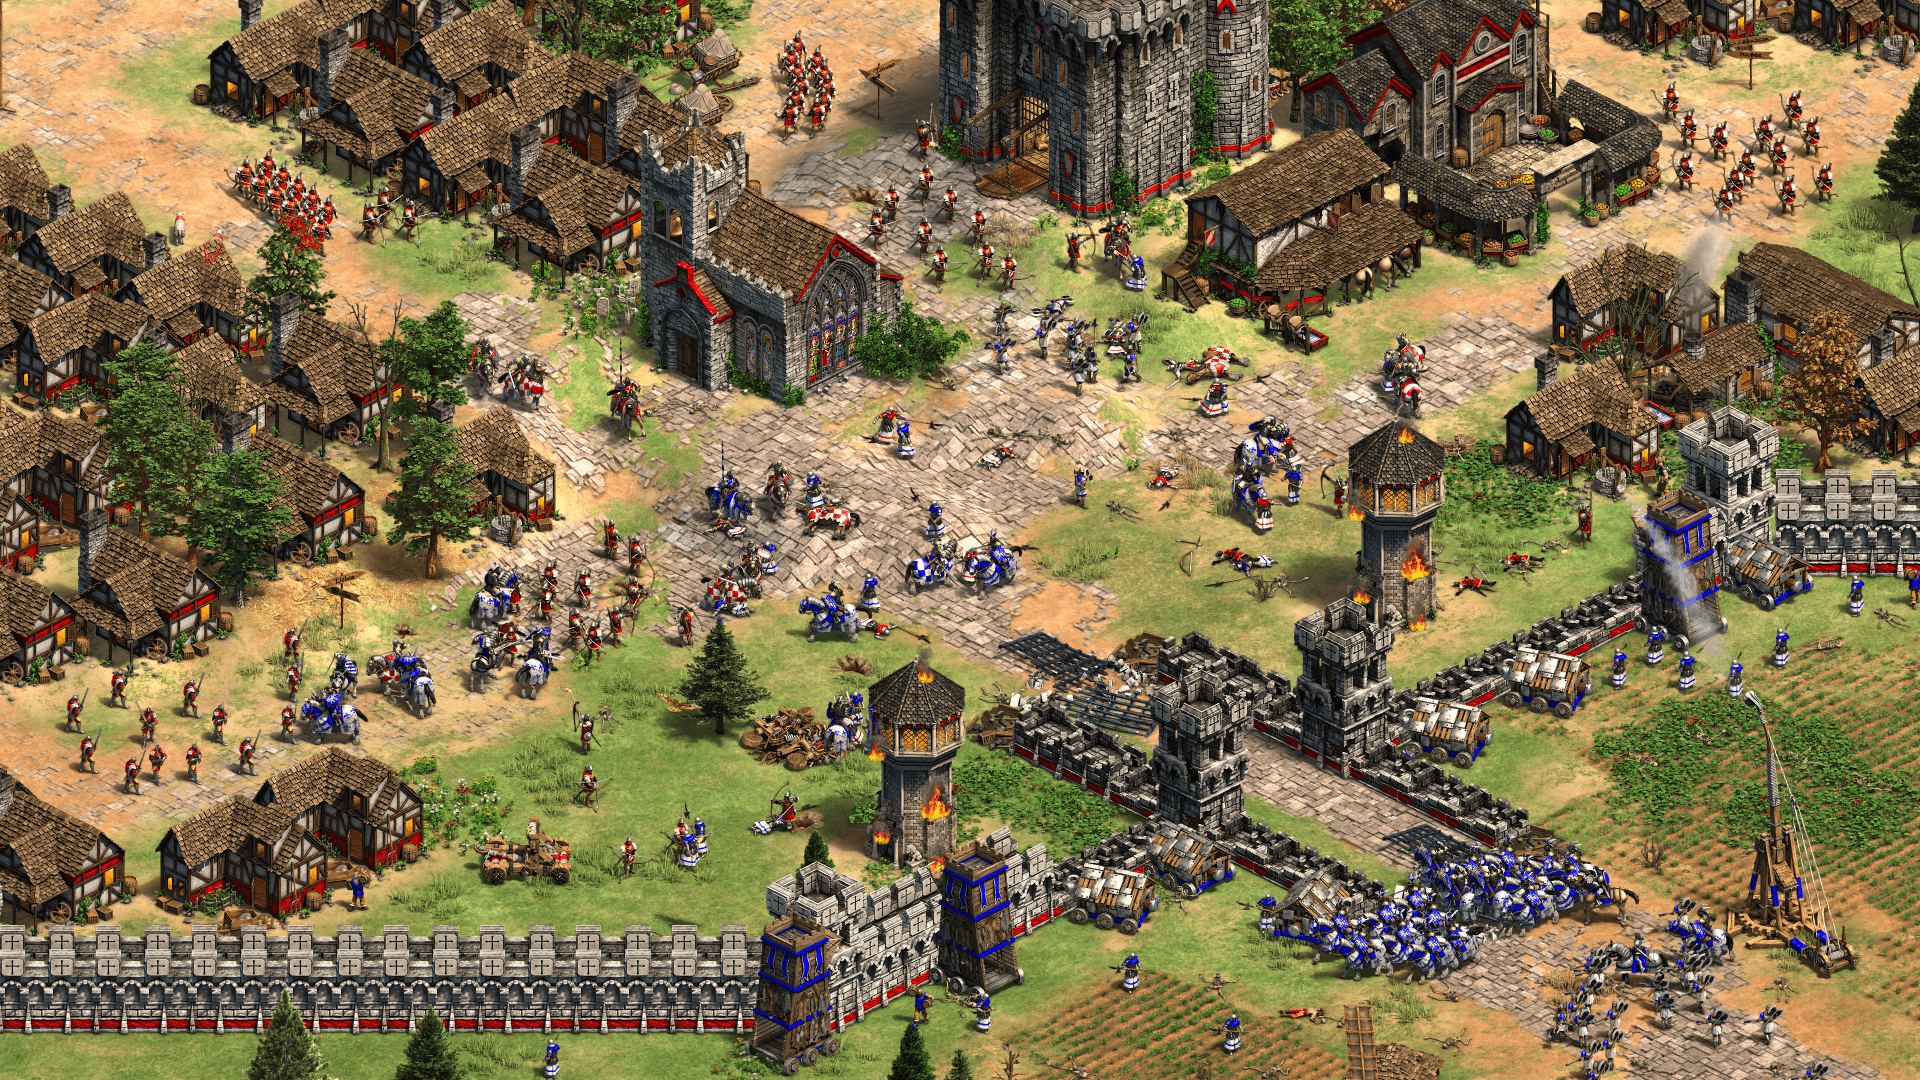 2013 erschien bereits eine HD-Version von "Age of Empires 2". In dem Game wählen Spieler zwischen verschiedenen Völkern aus der Zeit des Mittelalters wie Byzantiner oder Mongolen.